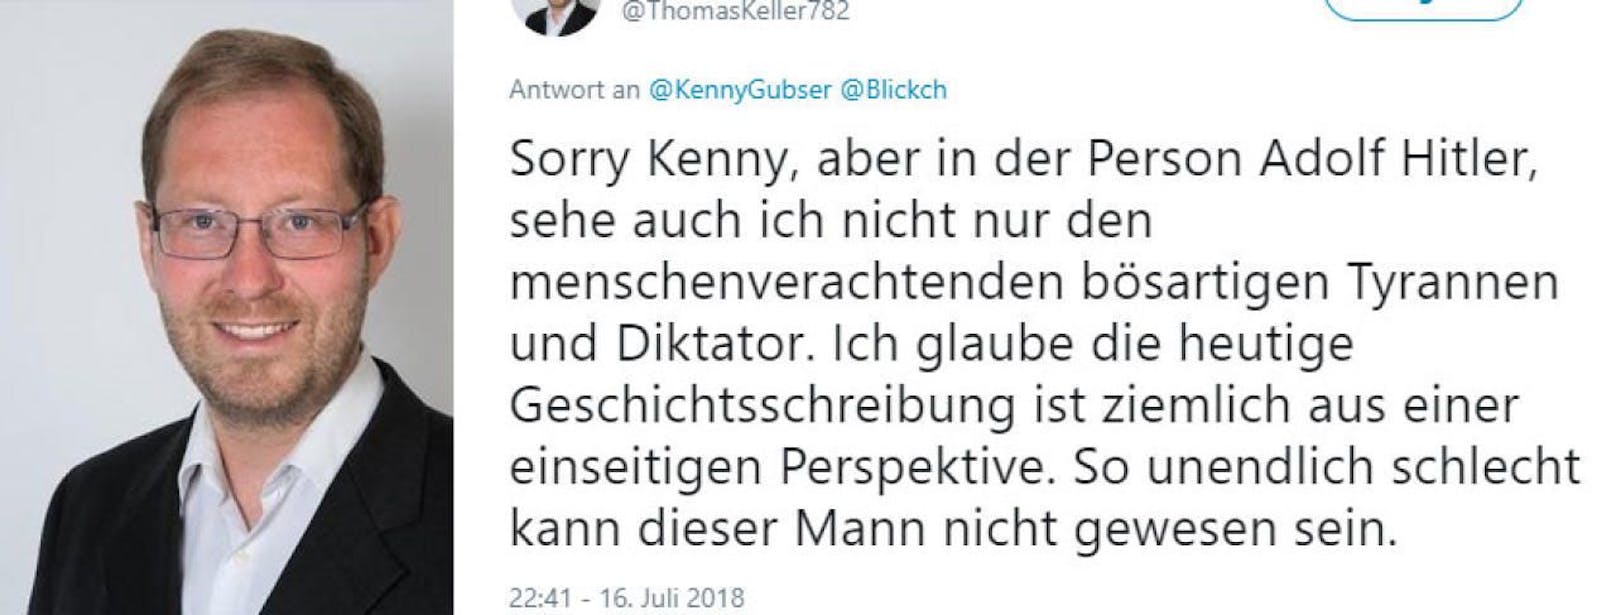 Der Schweizer Politiker Thomas Keller sorgte mit einem Tweet für Empörung.